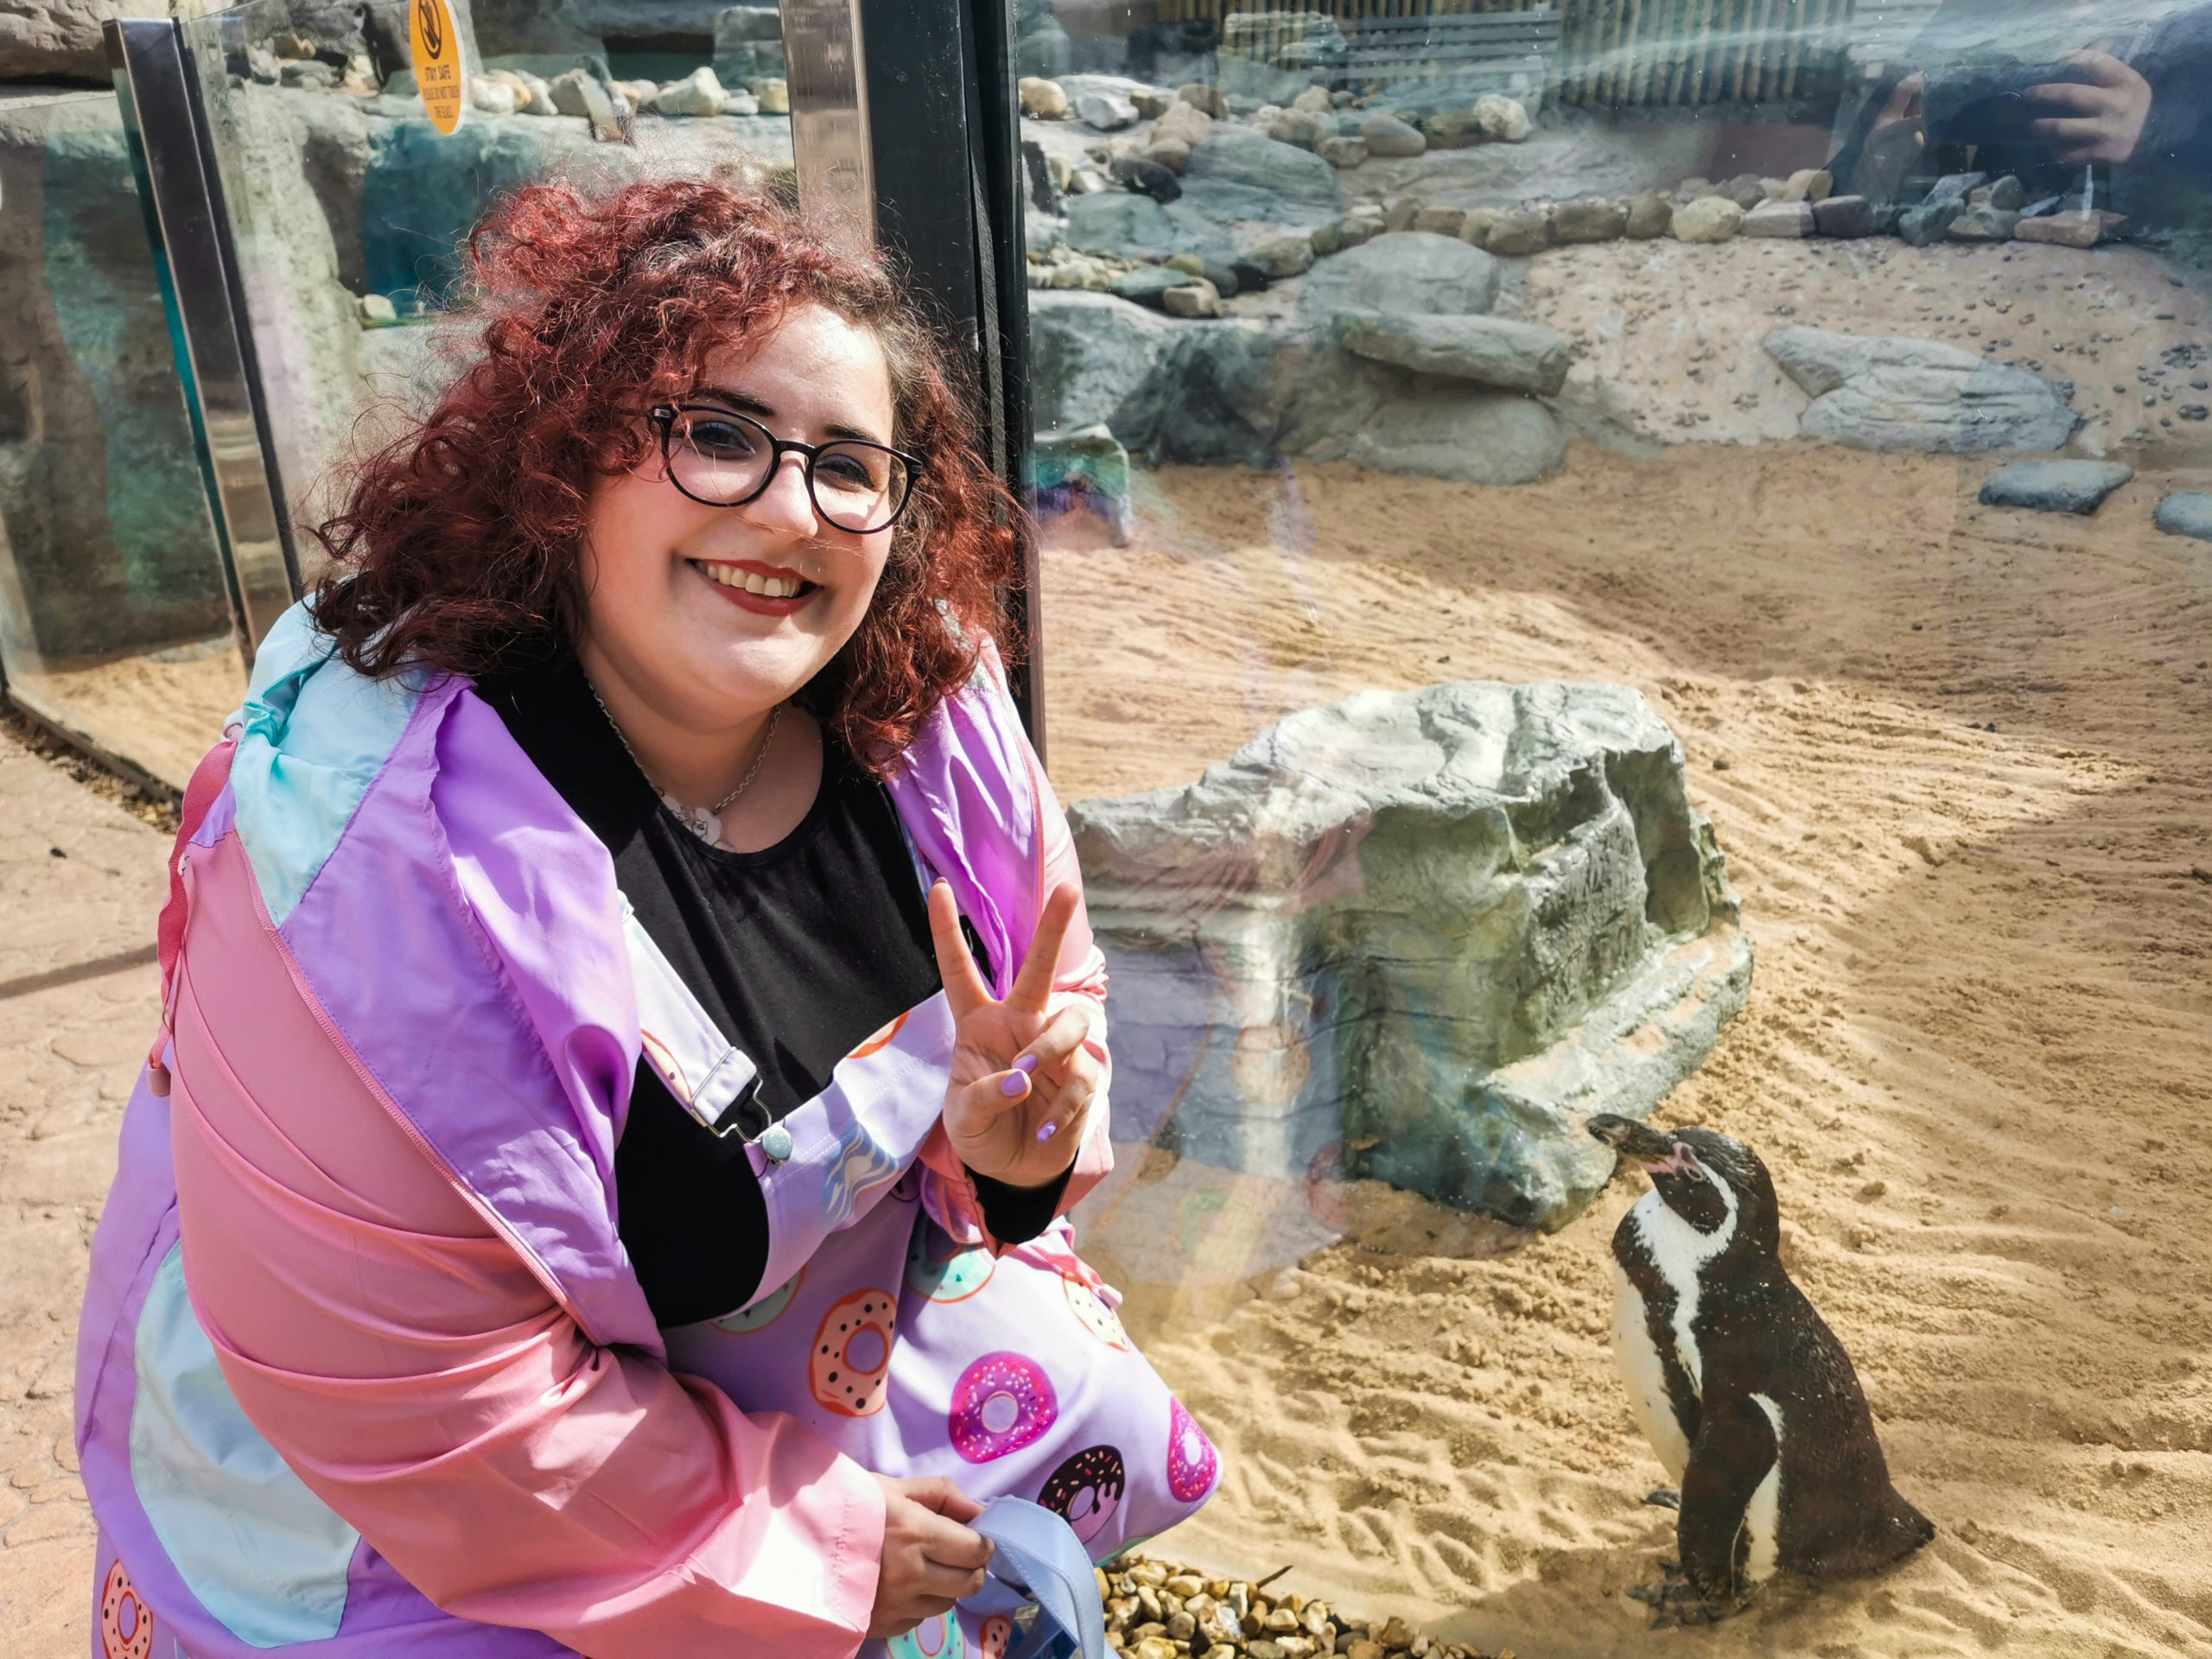 Safari Park Meeting Penguins